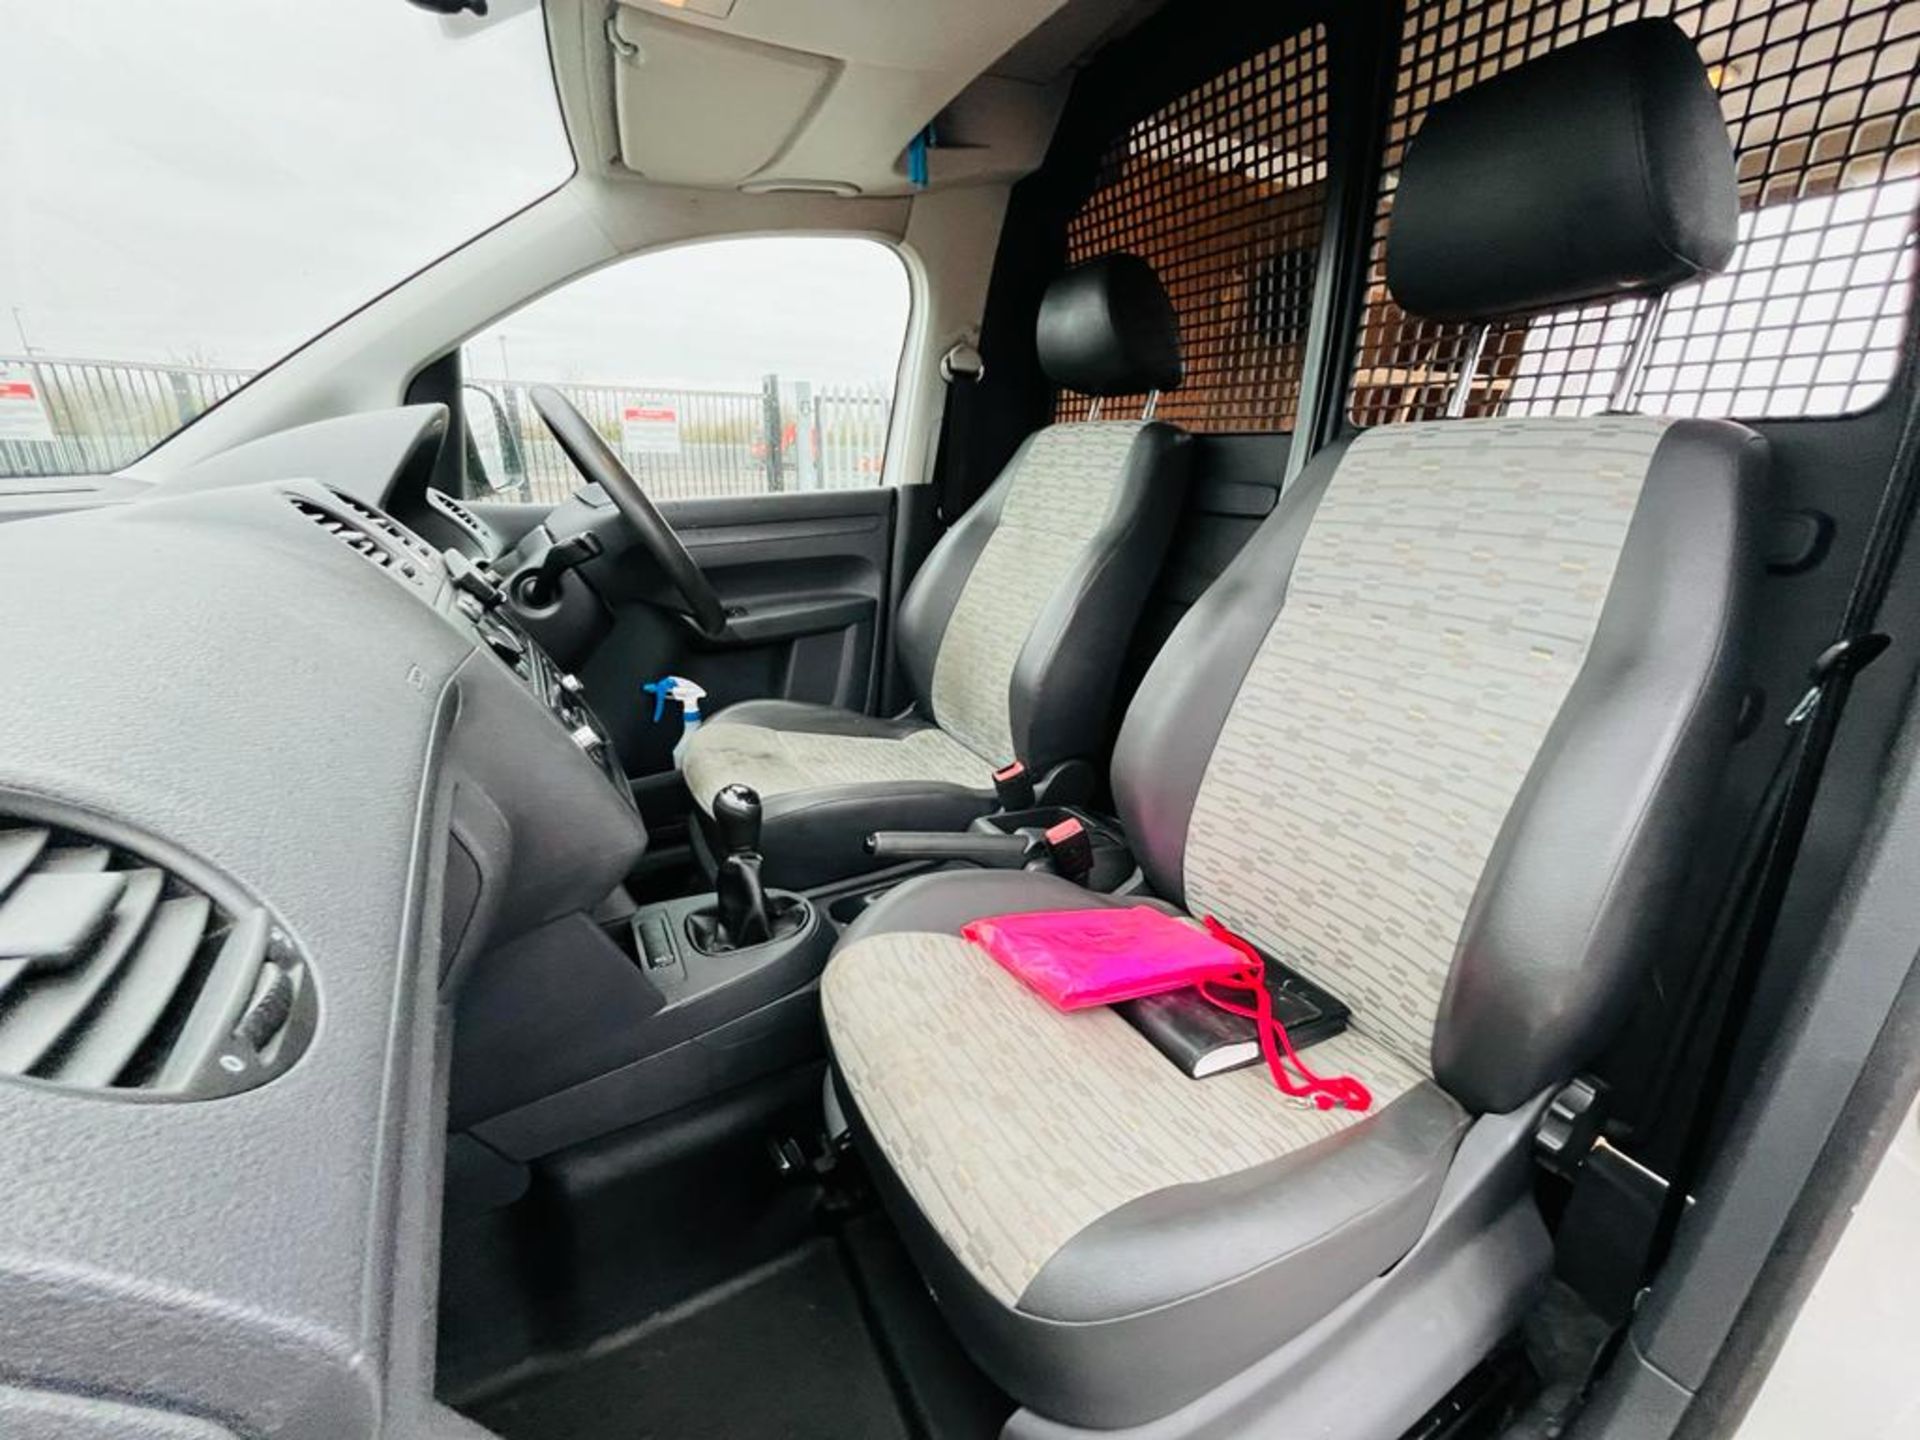 Volkswagen Caddy C20 1.6 TDI 102 2013 '13 Reg' - Panel Van - No Vat - Image 24 of 28